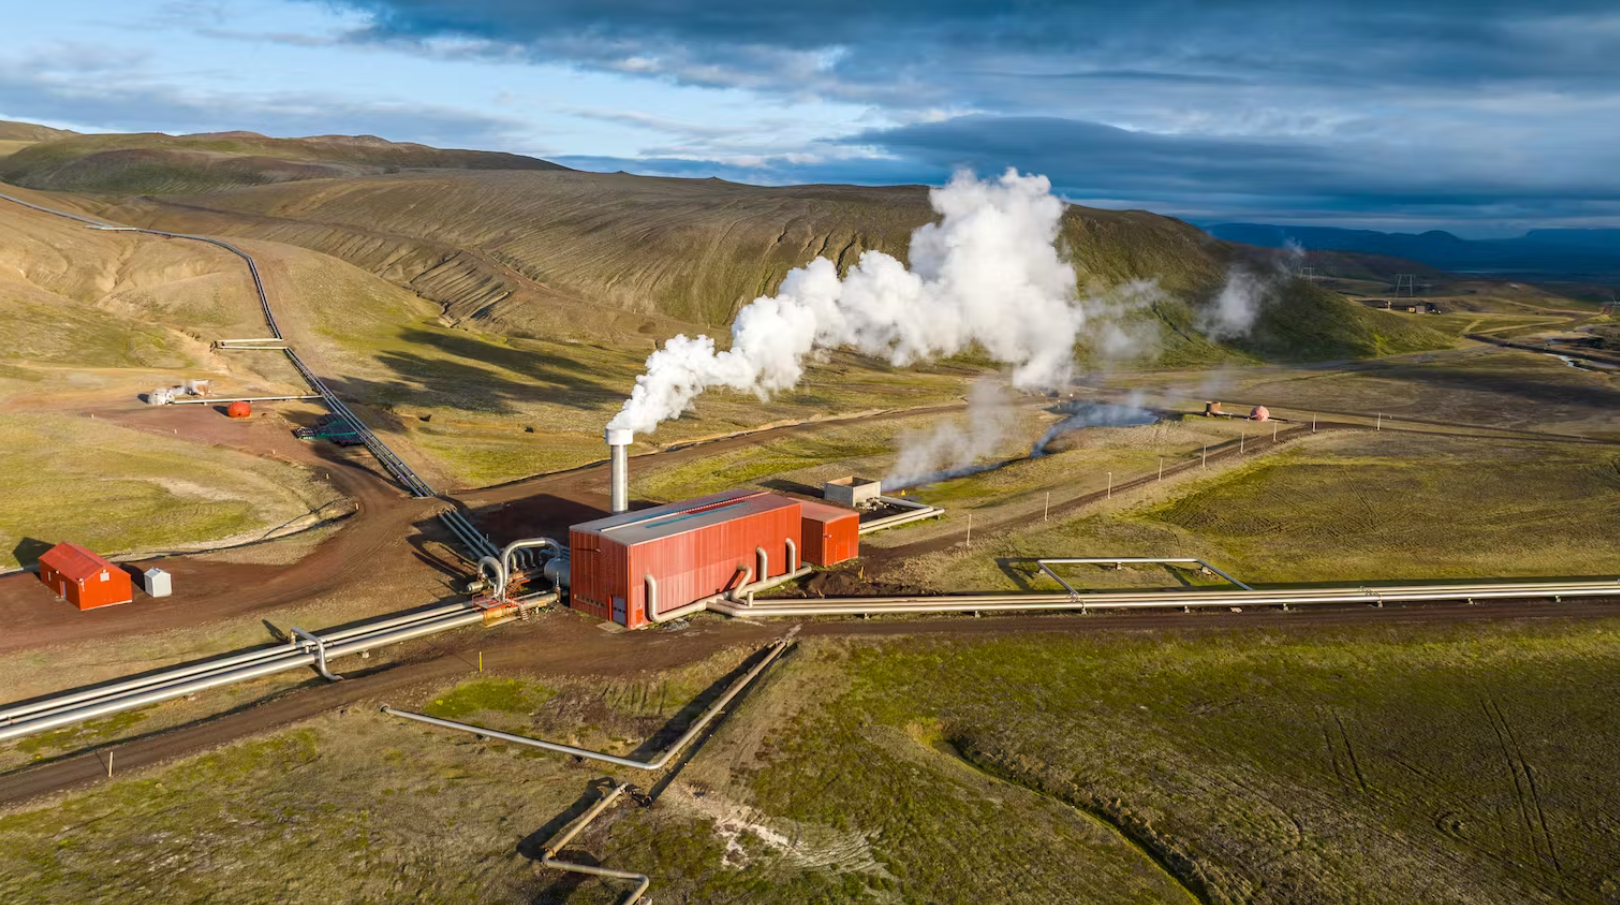 Islandia: Negara Dingin Akrab dengan Panas Bumi. zonaebt.com